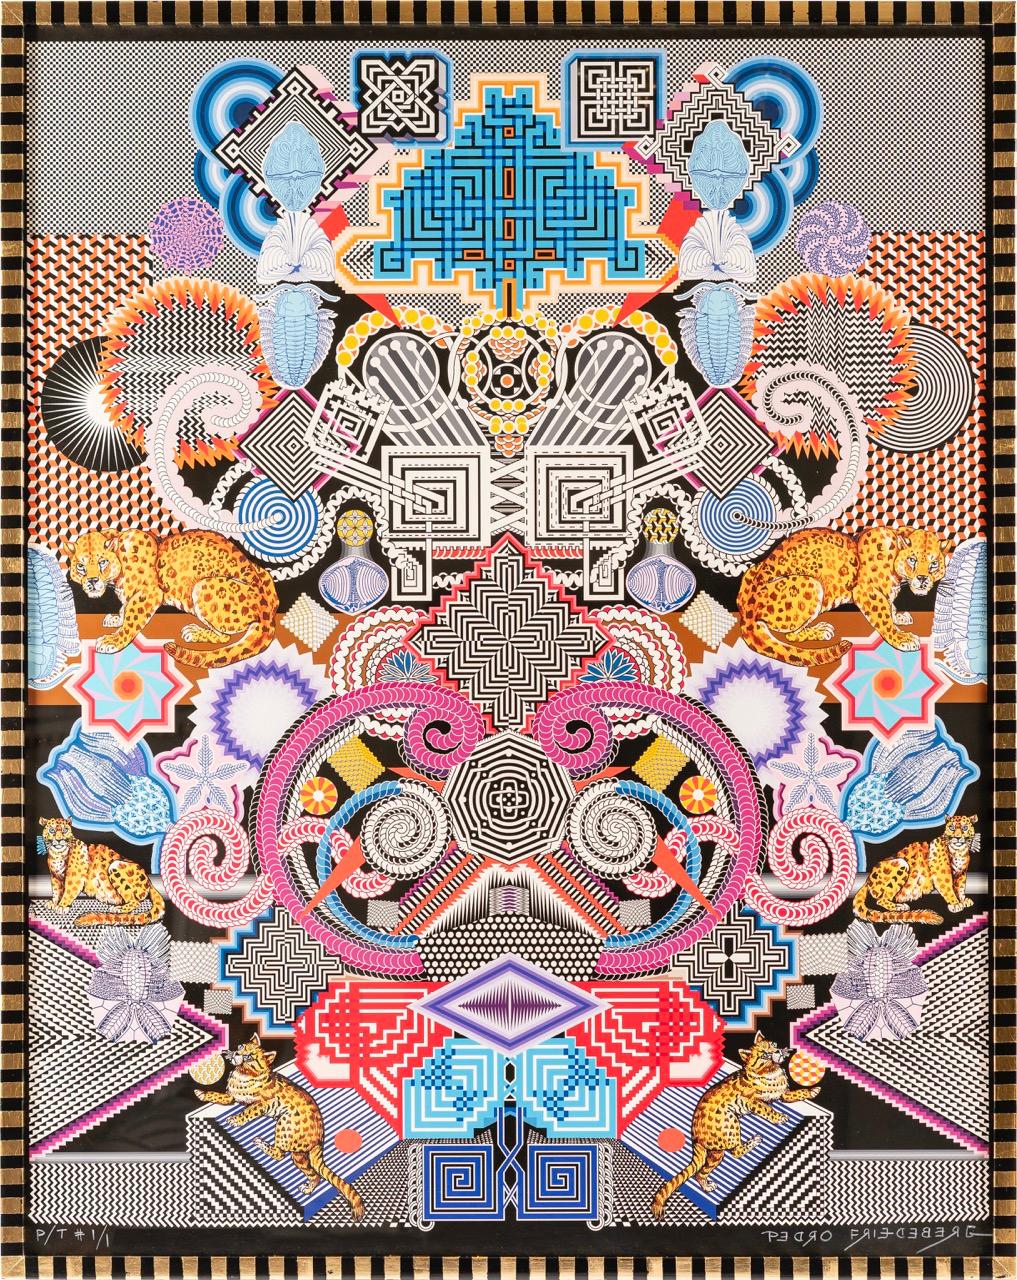 Figurative Print Pedro Friedeberg - "Tiempos fáciles" contemporain, surréaliste, formes géométriques, jaguars, motifs. 